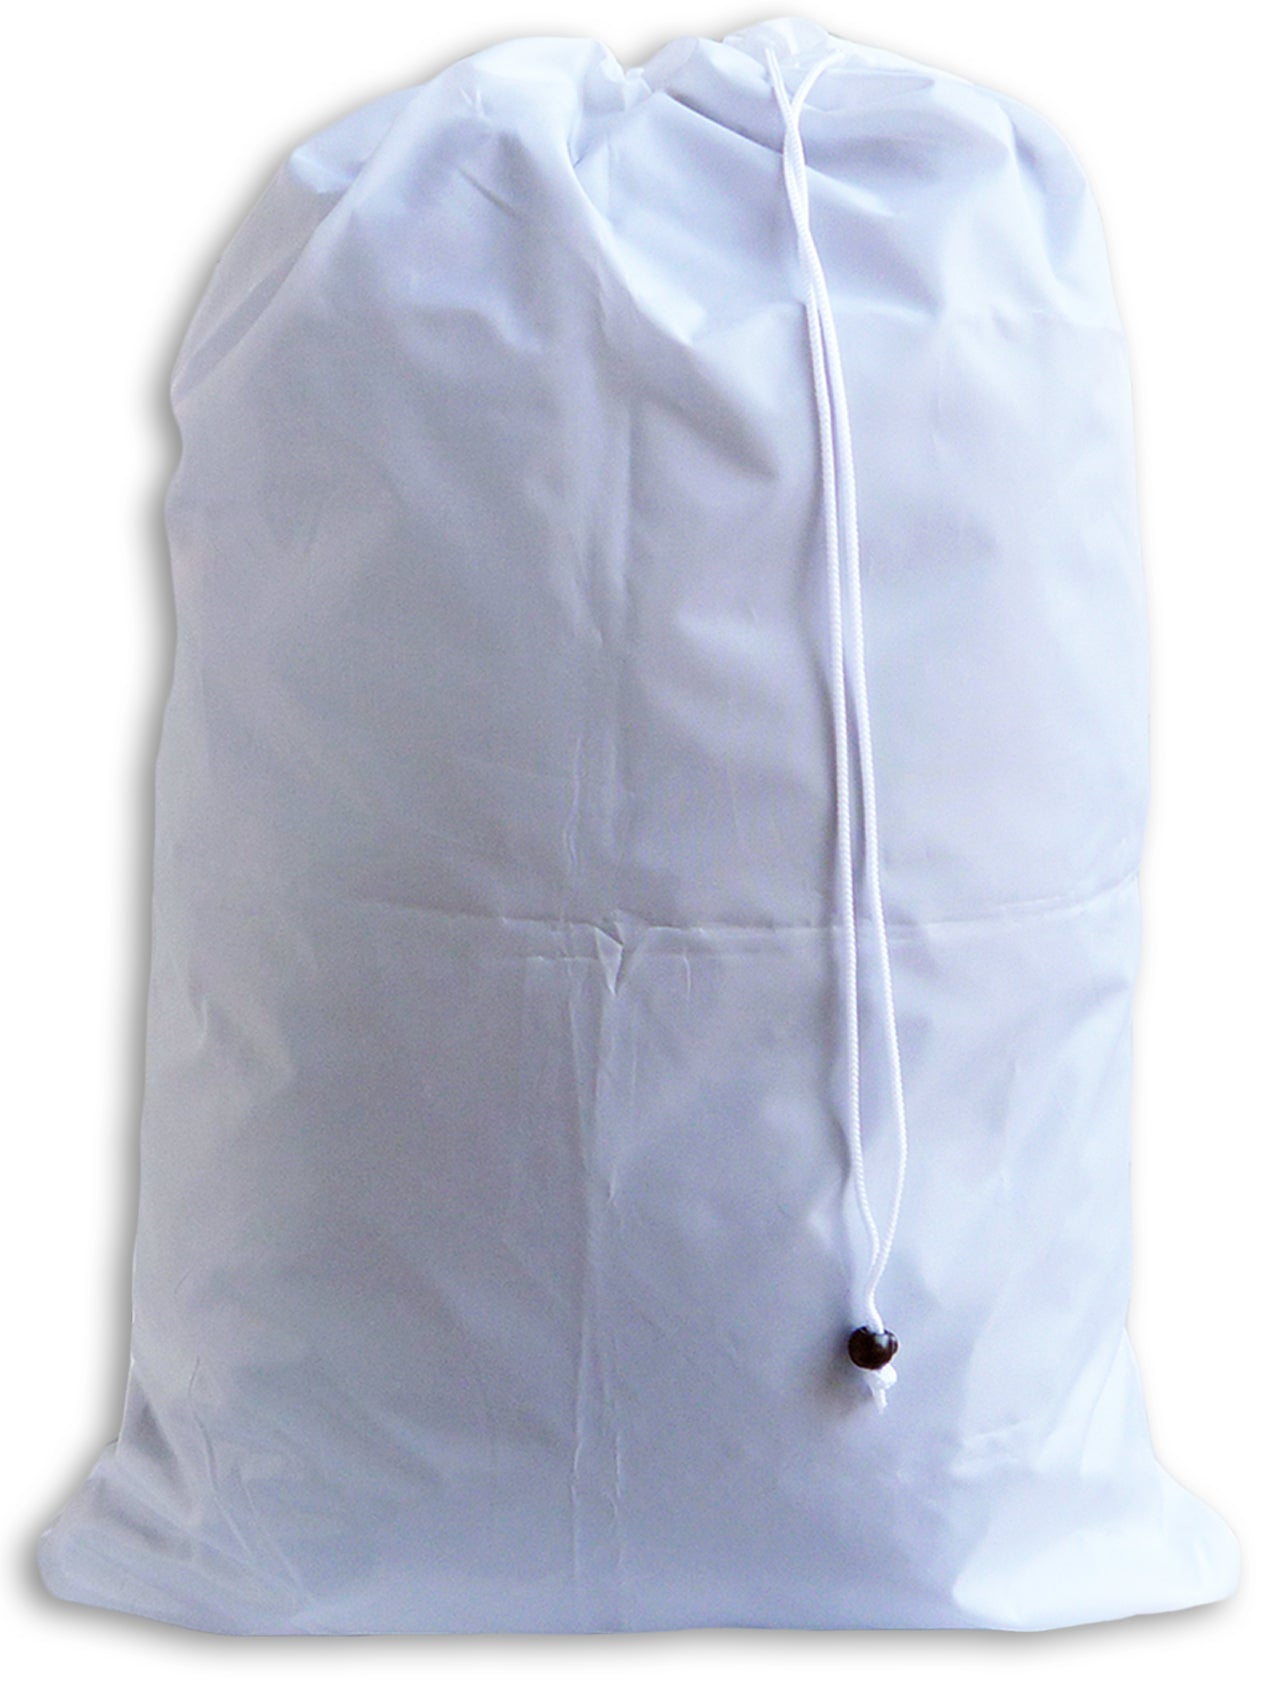 LastObject Laundry Bag Large